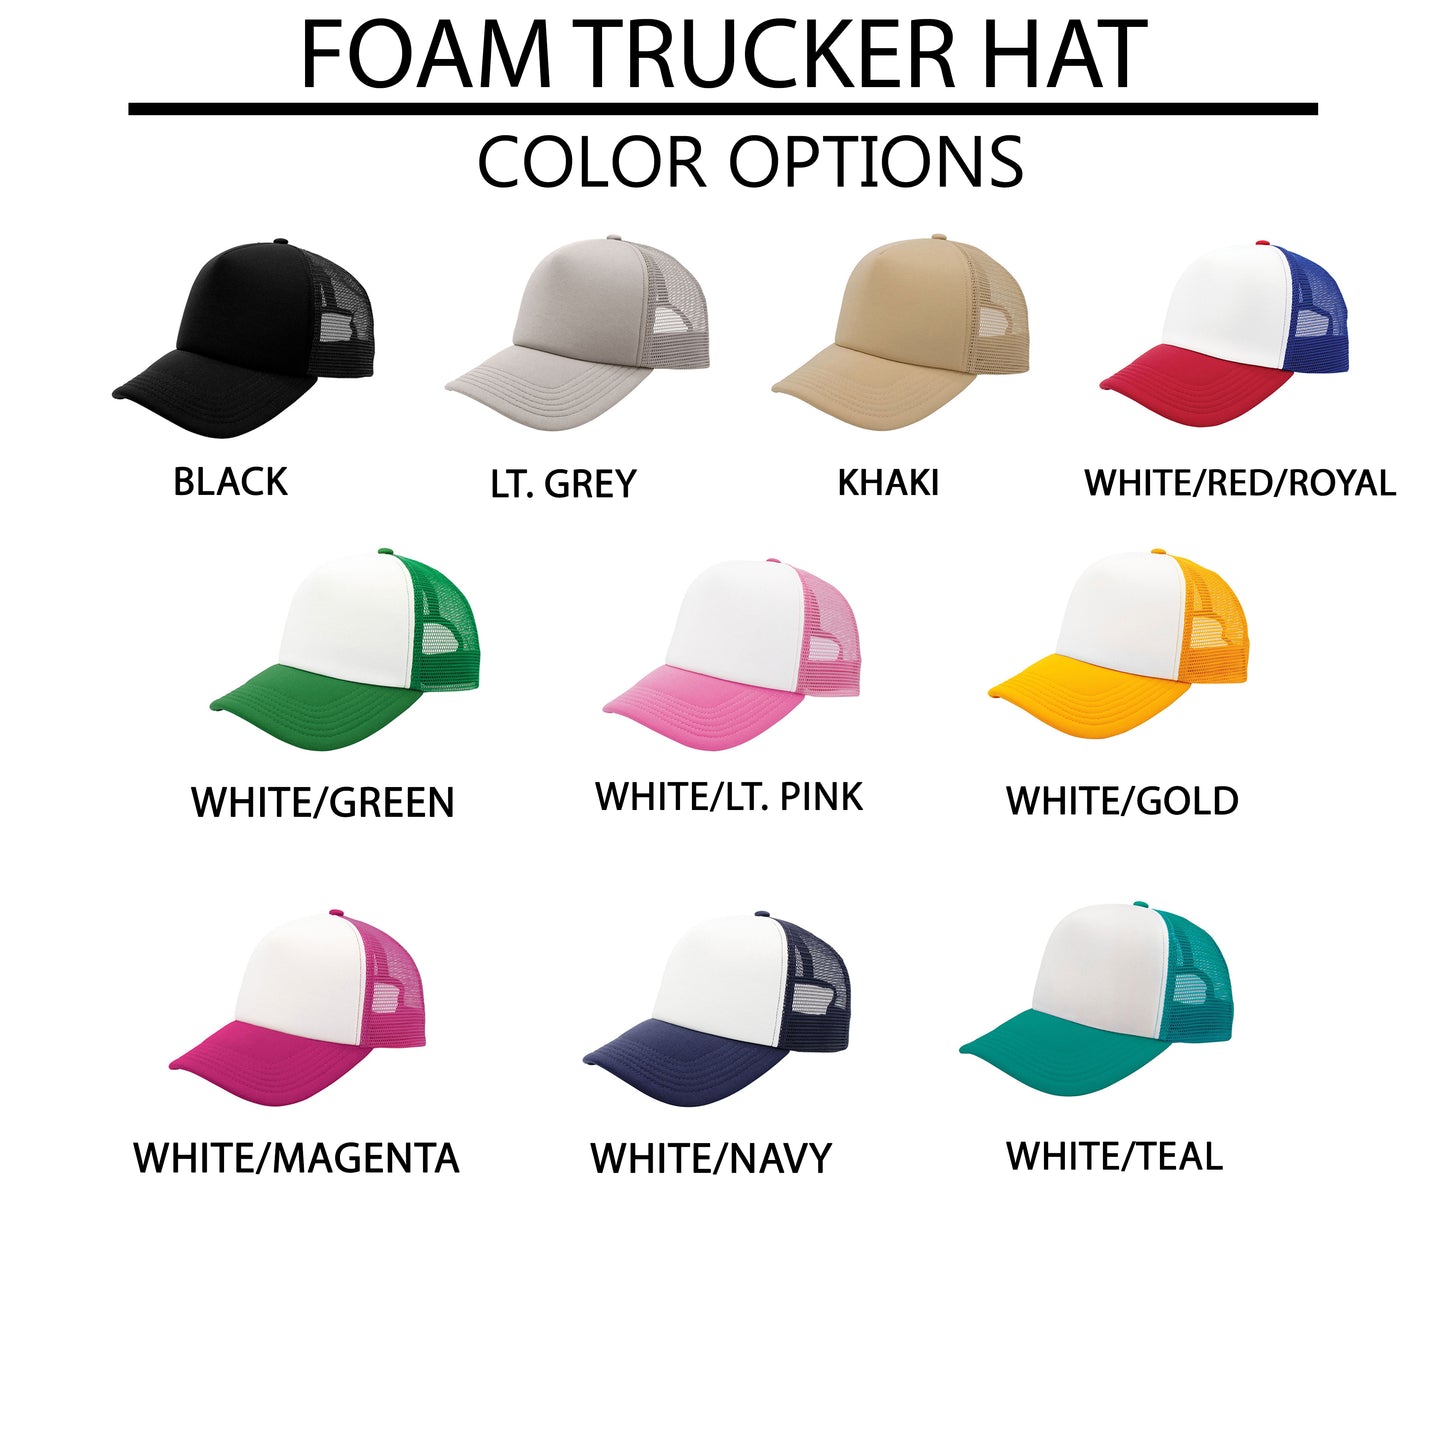 You're Doing Great Smiley Face | Foam Trucker Hat